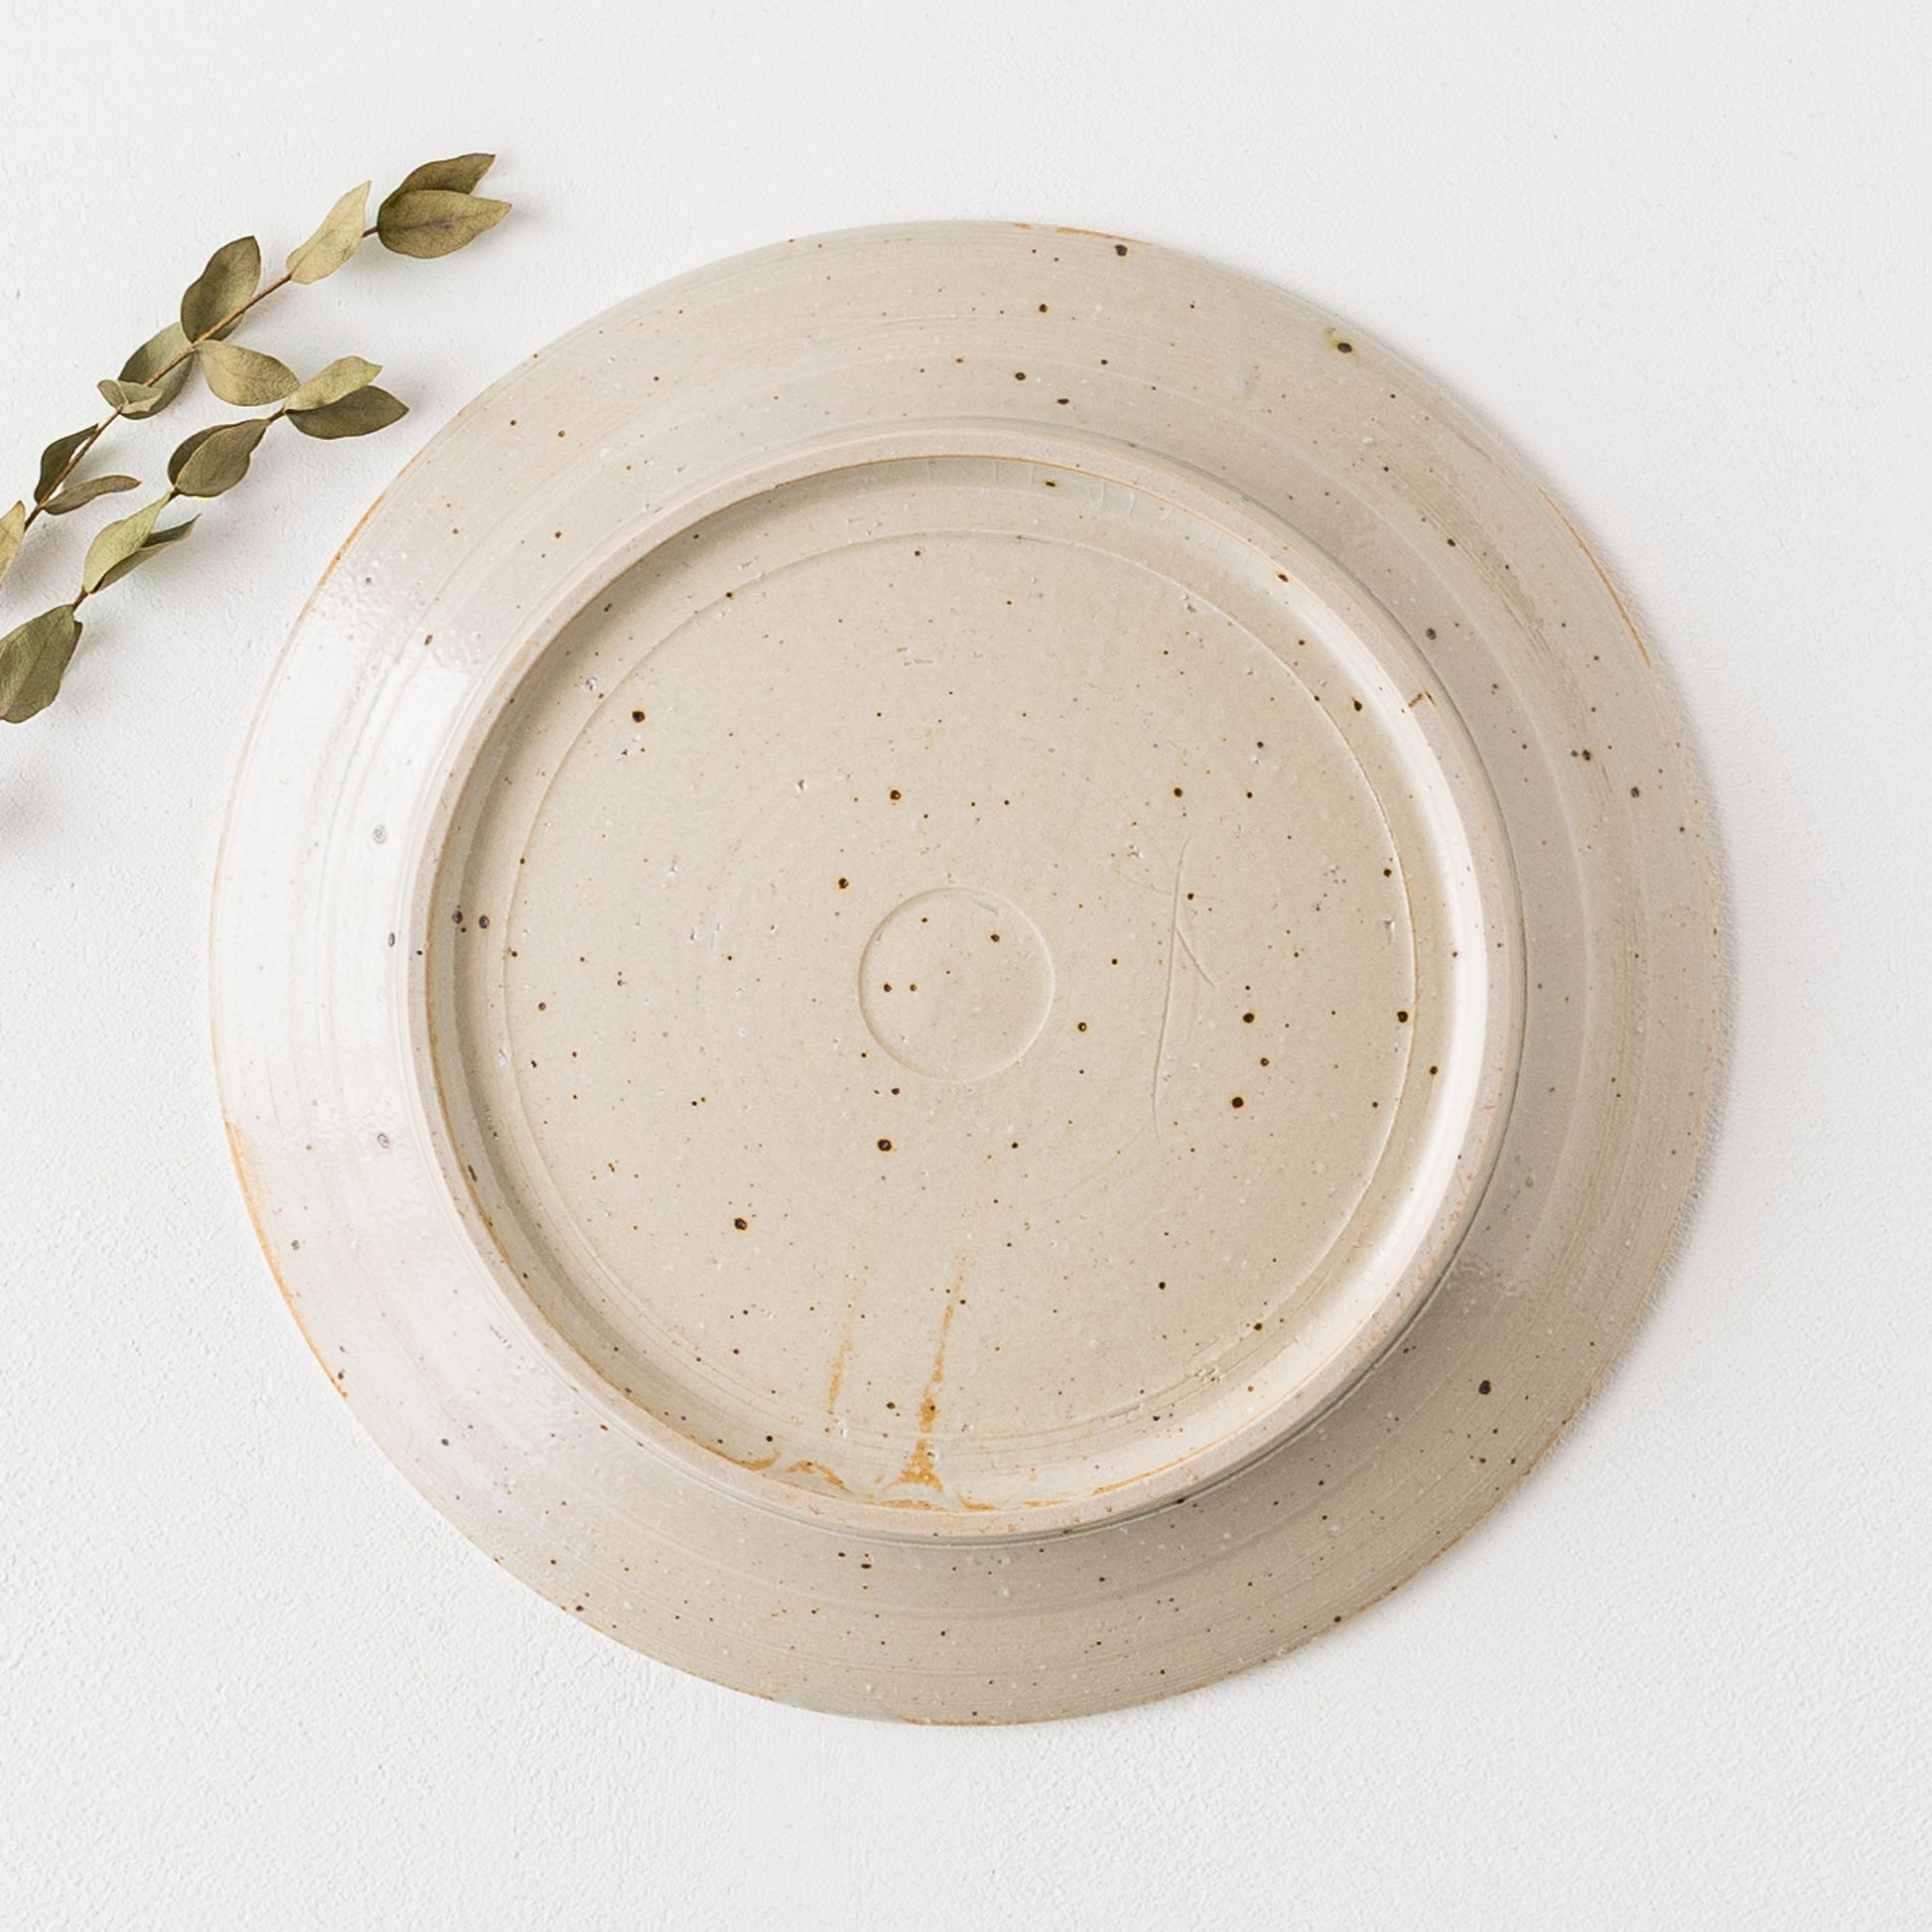 ところどころ表れた鉄粉が味わい深い冨本大輔さんの灰釉鉄絵7寸リム皿